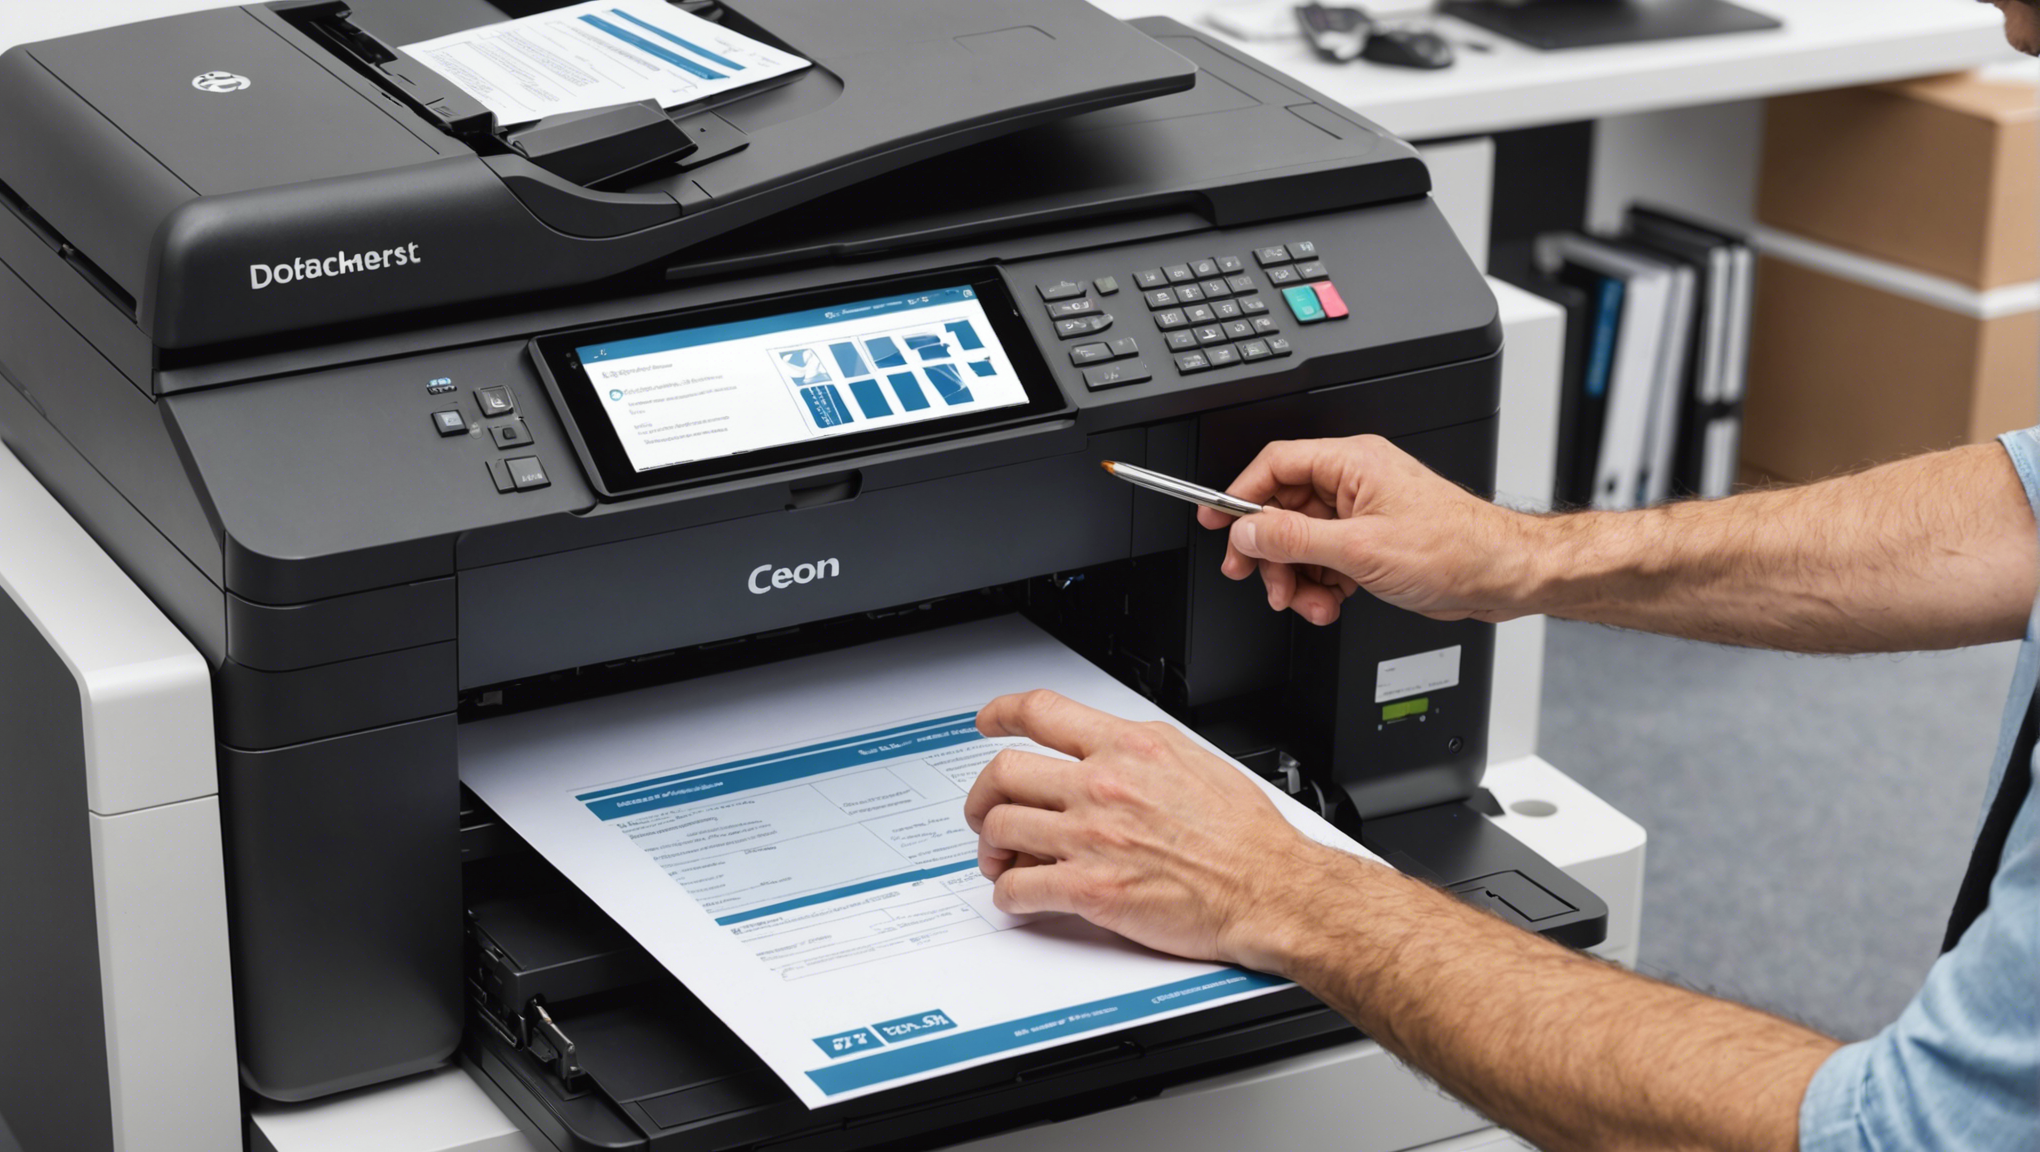 découvrez nos services d'entretien pour imprimantes professionnelles abordables et fiables à prix compétitifs.